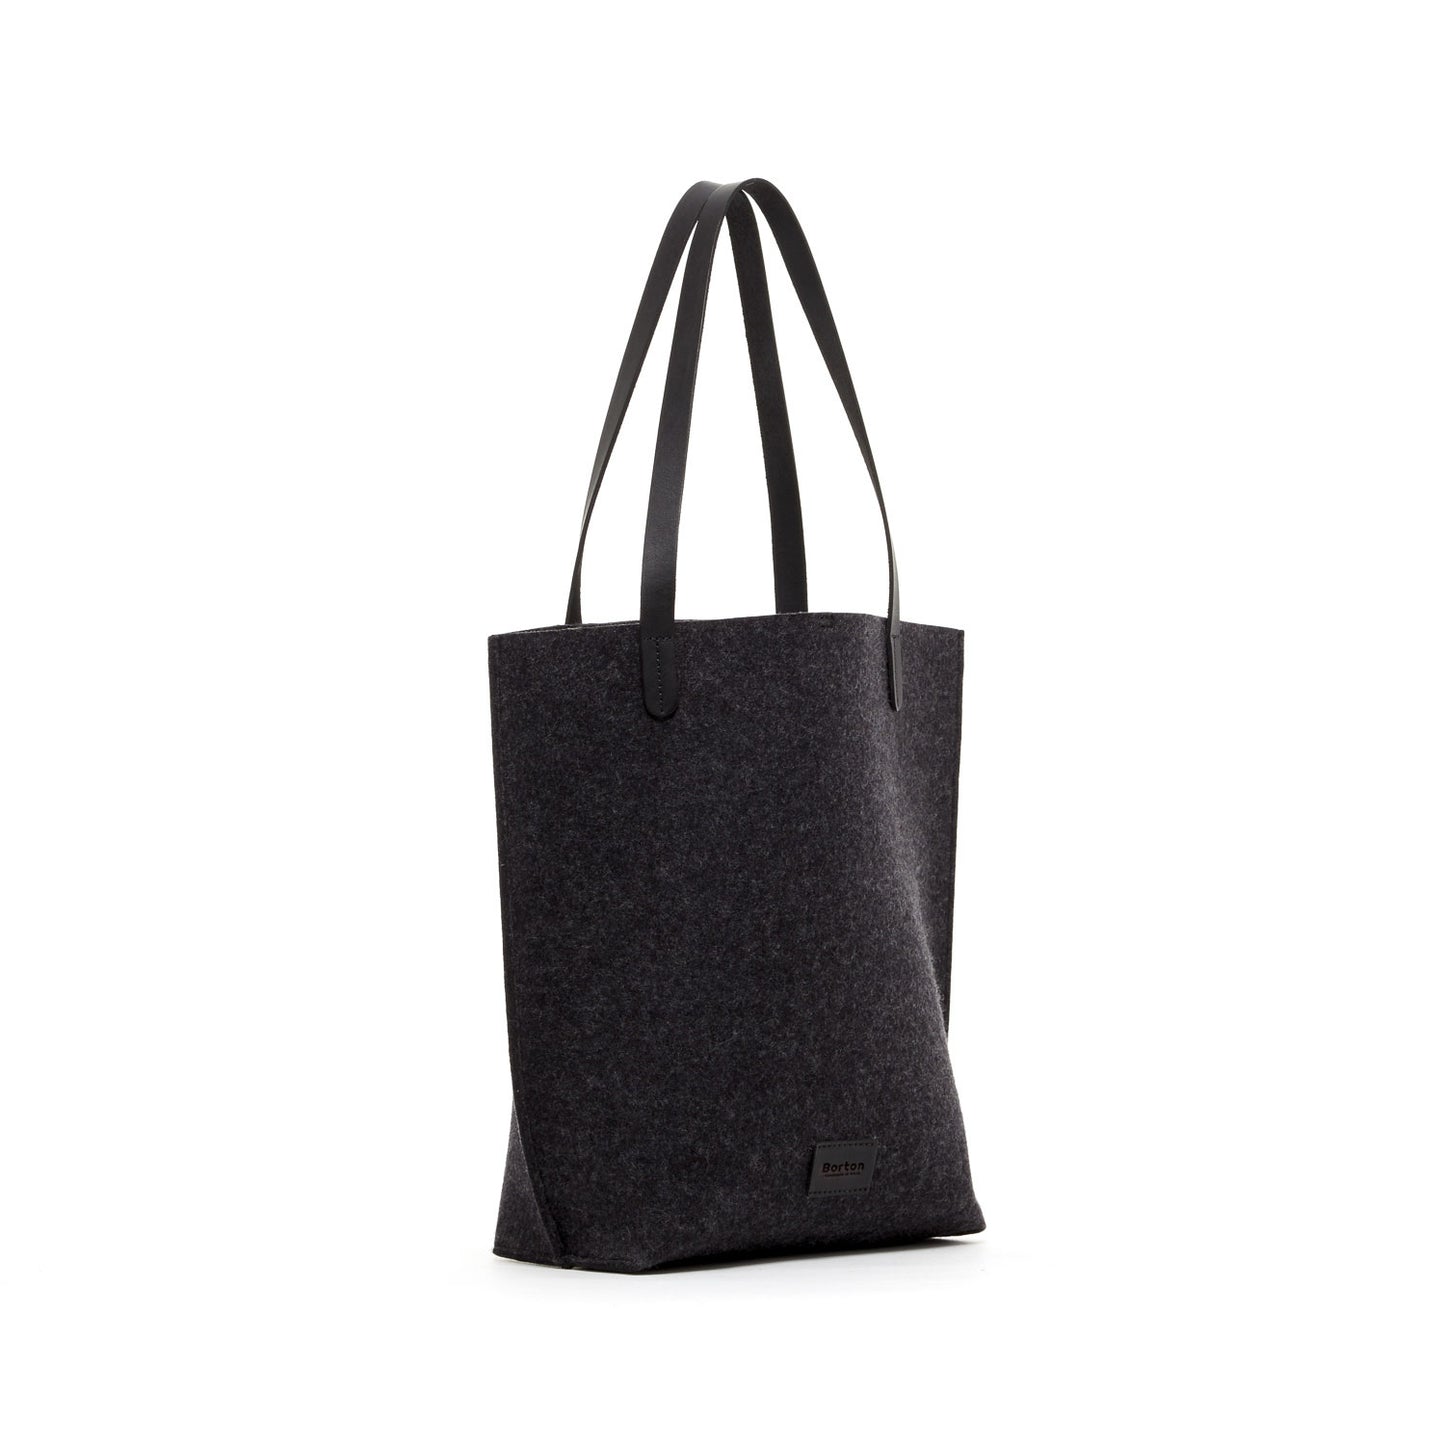 Mery Tote Bag Black Felt & Black Leather